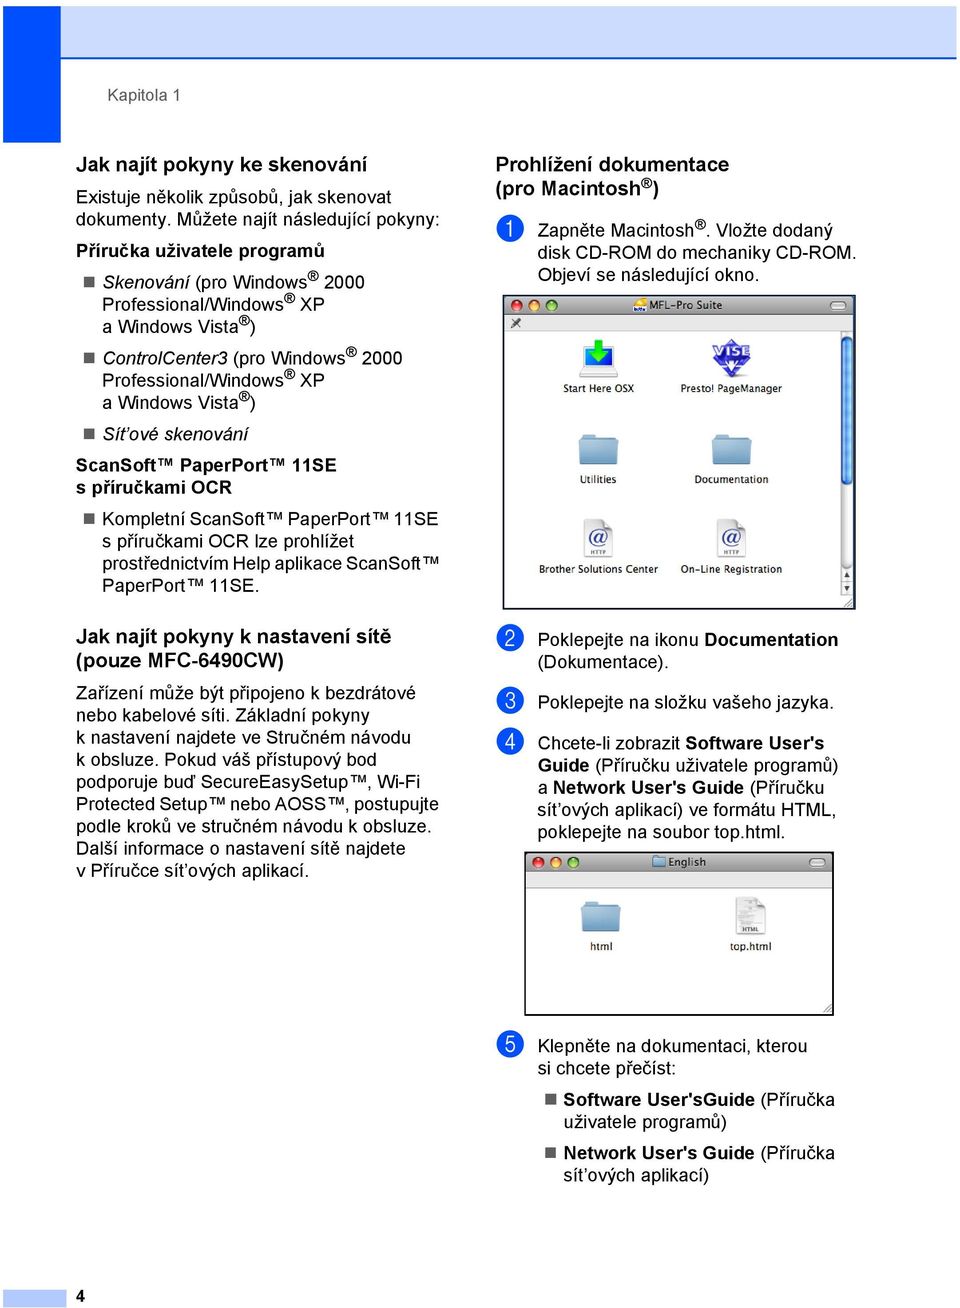 ) Sít ové skenování ScanSoft PaperPort 11SE spříručkami OCR Kompletní ScanSoft PaperPort 11SE s příručkami OCR lze prohlížet prostřednictvím Help aplikace ScanSoft PaperPort 11SE.